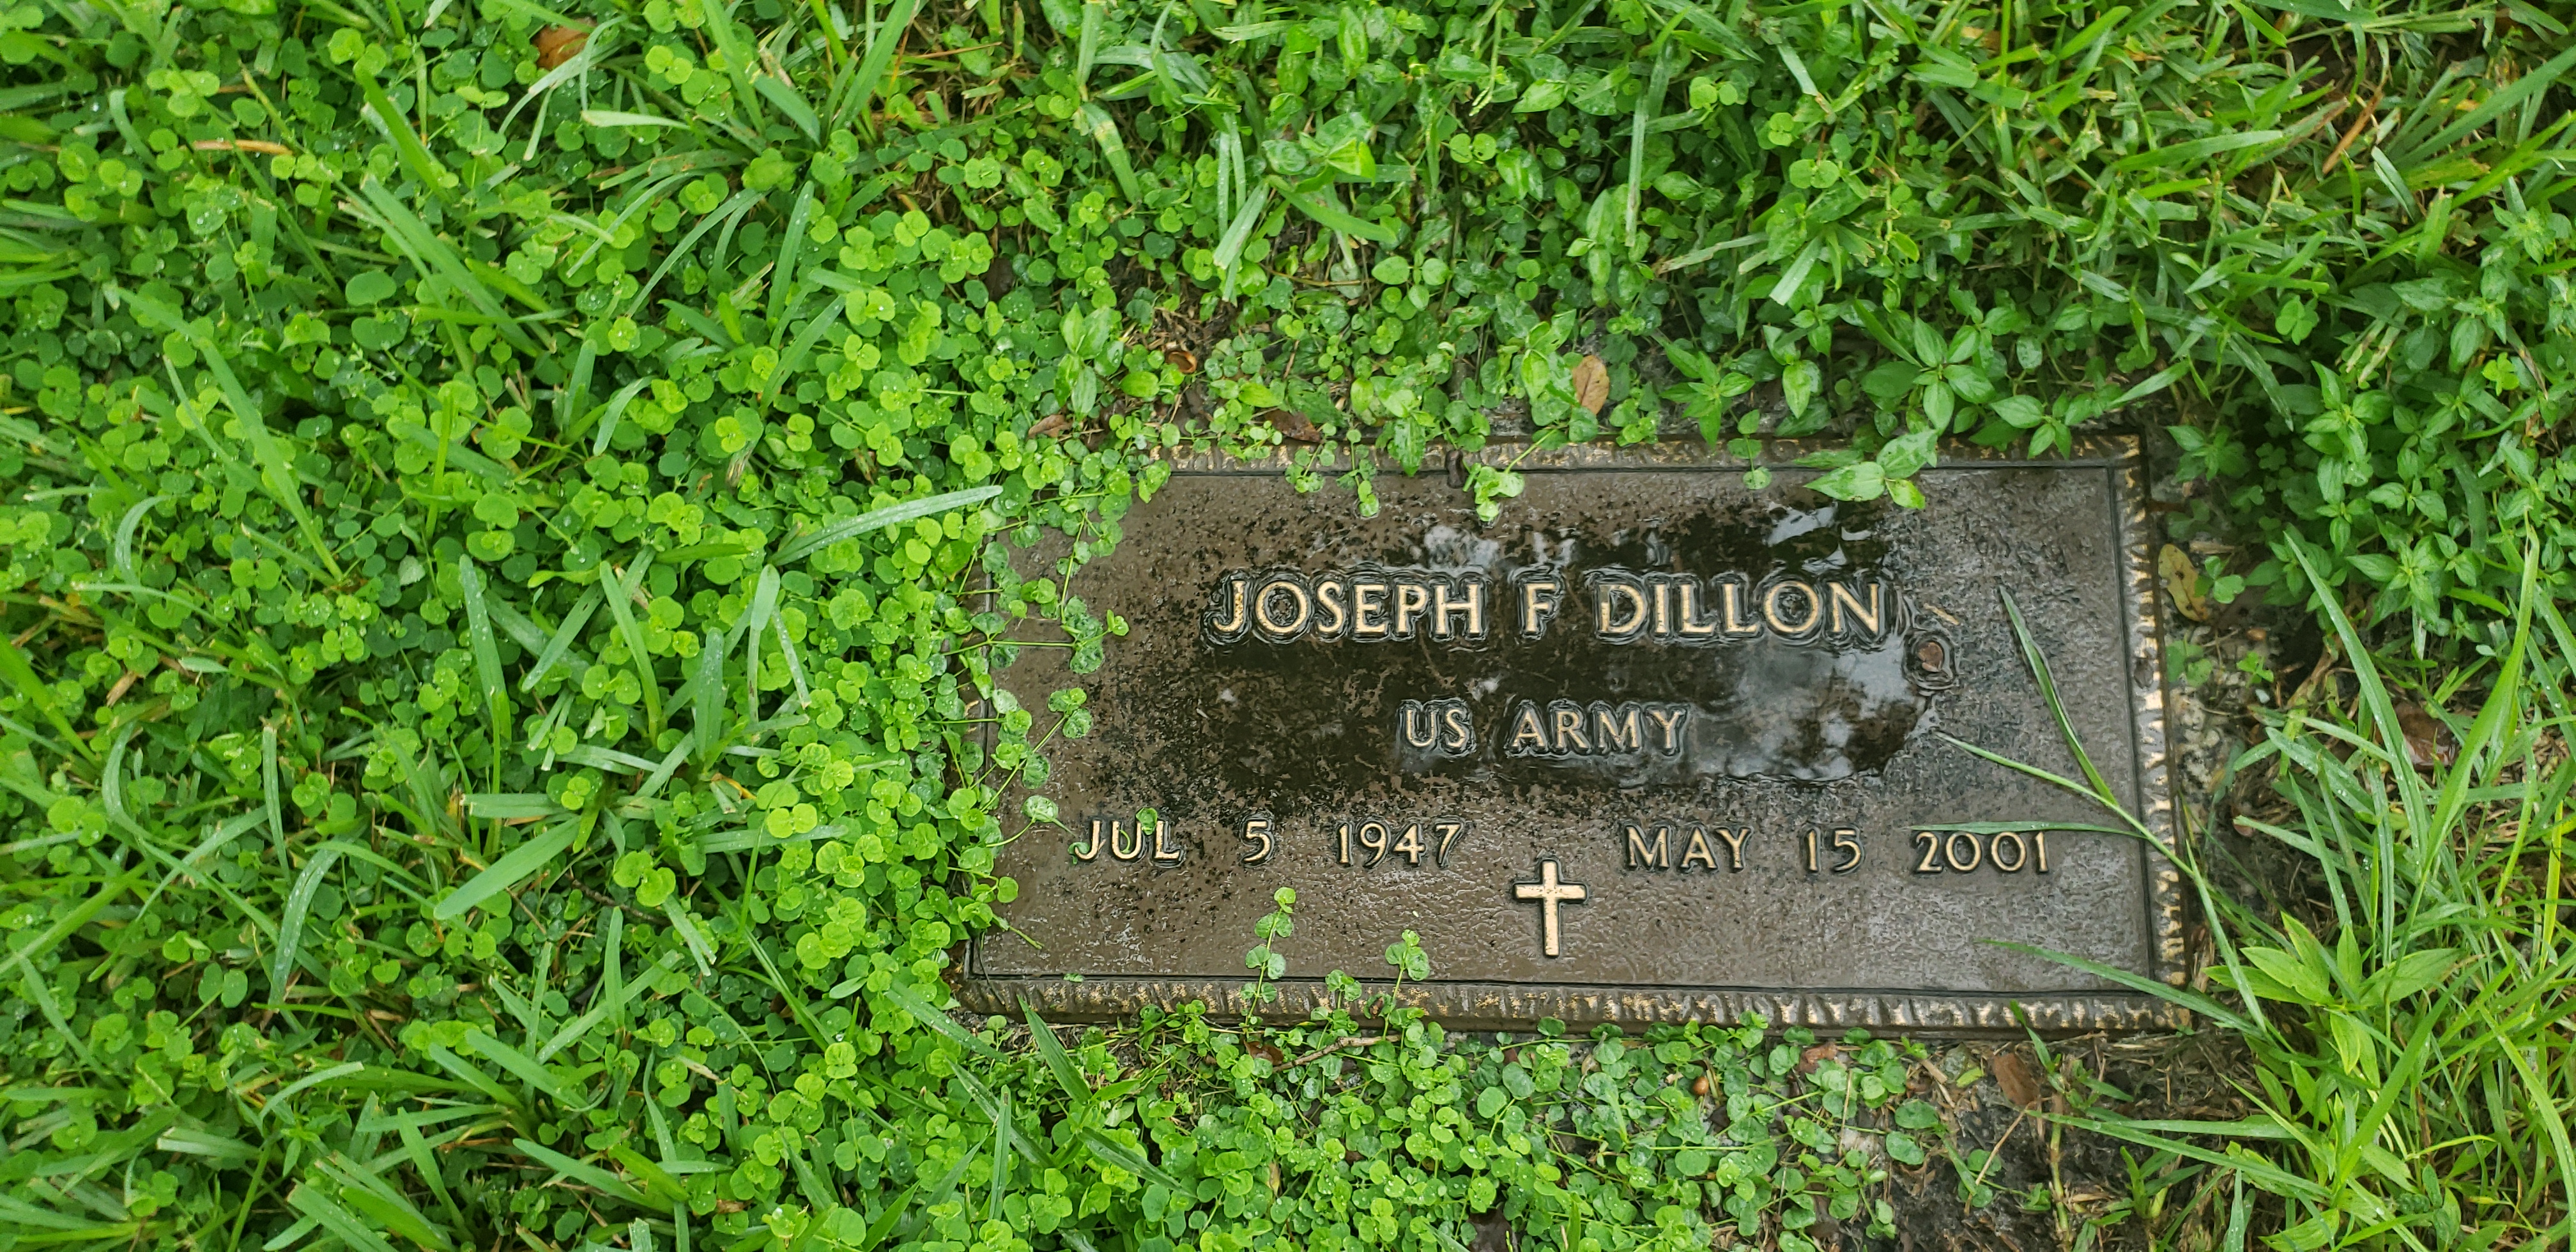 Joseph F Dillon